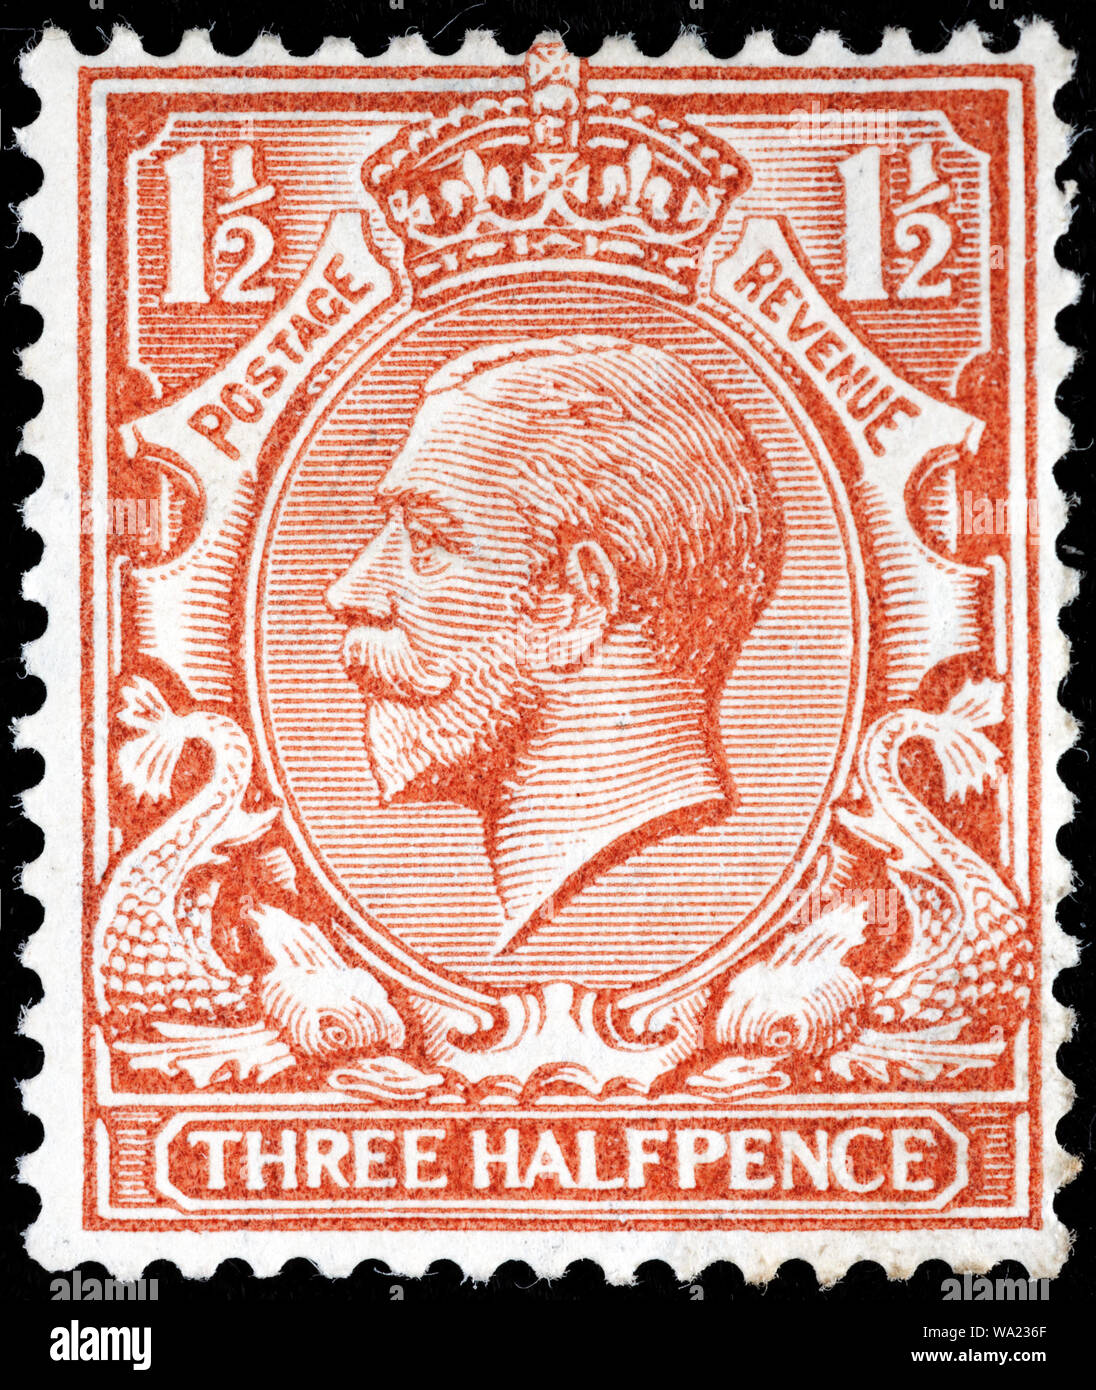 Le roi George V (1865-1936), timbre-poste, UK, 1912 Banque D'Images